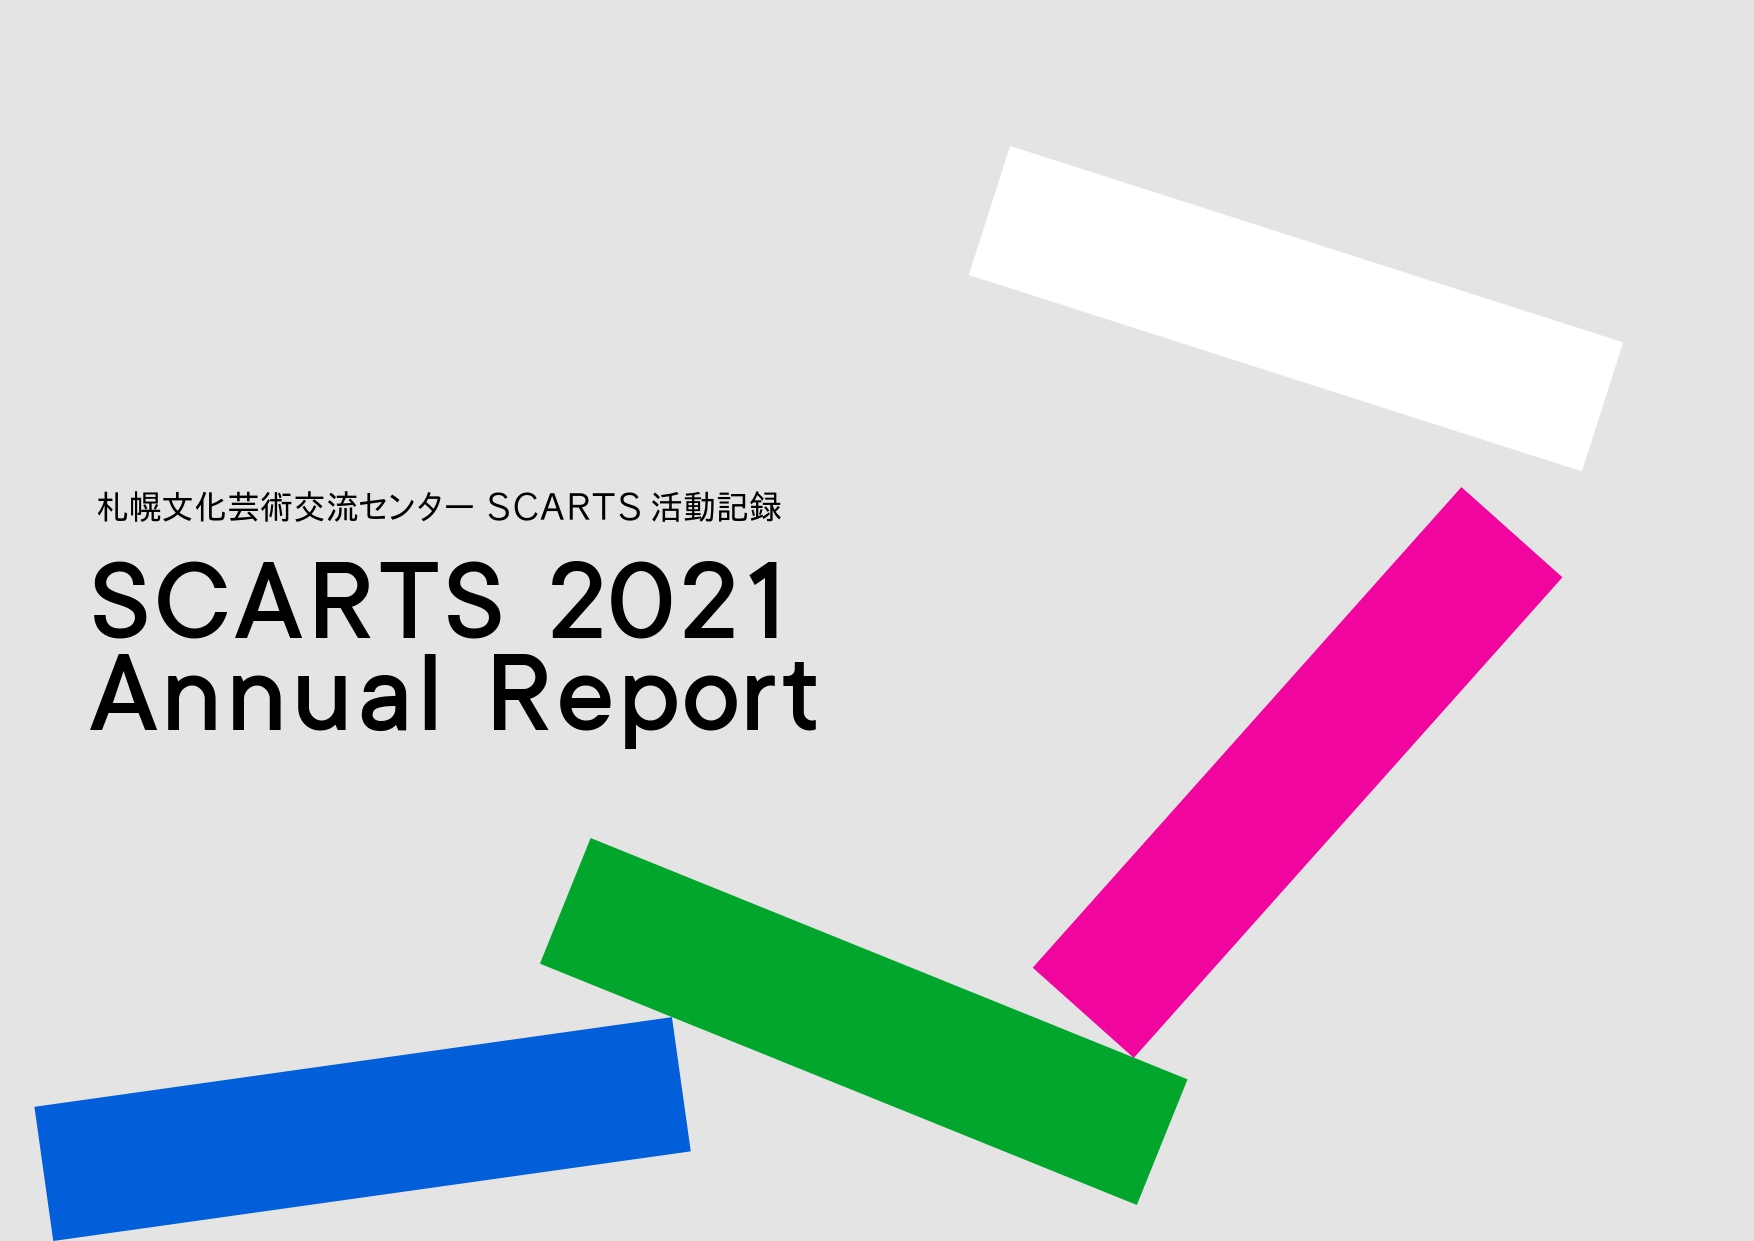 「SCARTS 2021 Annual Report」を公開しました。イメージ